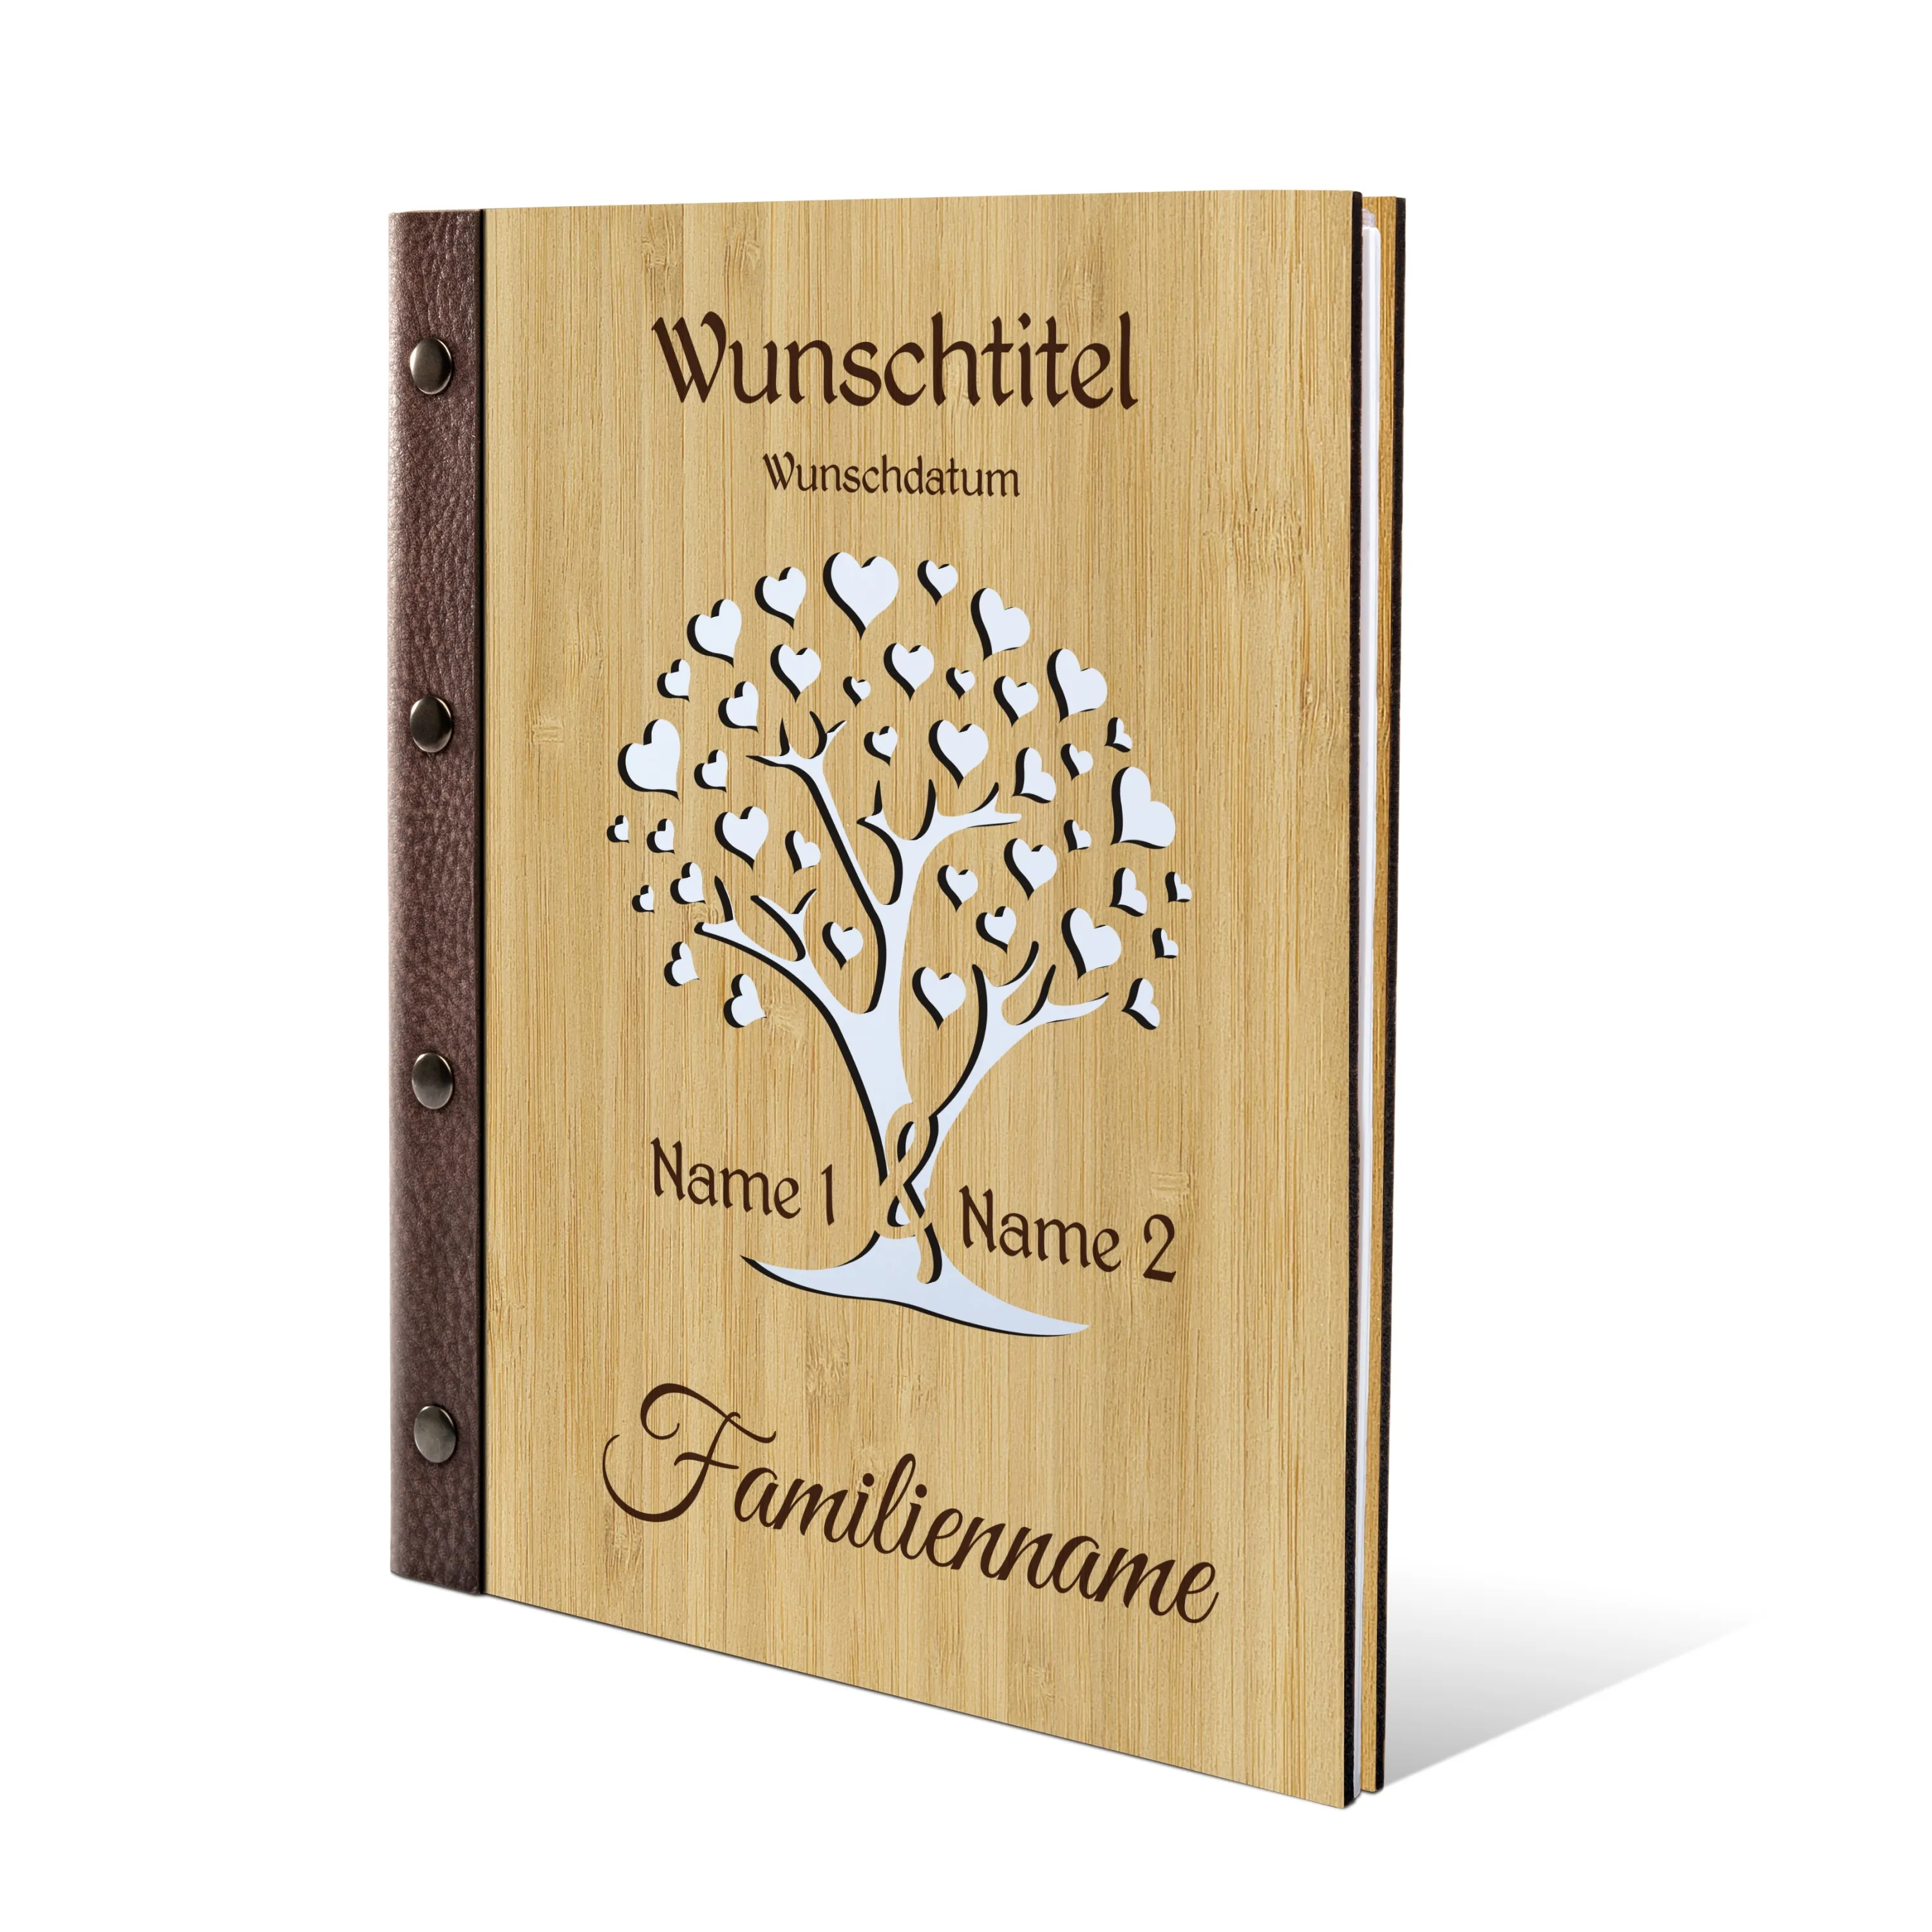 Personalisiertes Stammbuch Bambus Stammbuchformat - Herzbaum